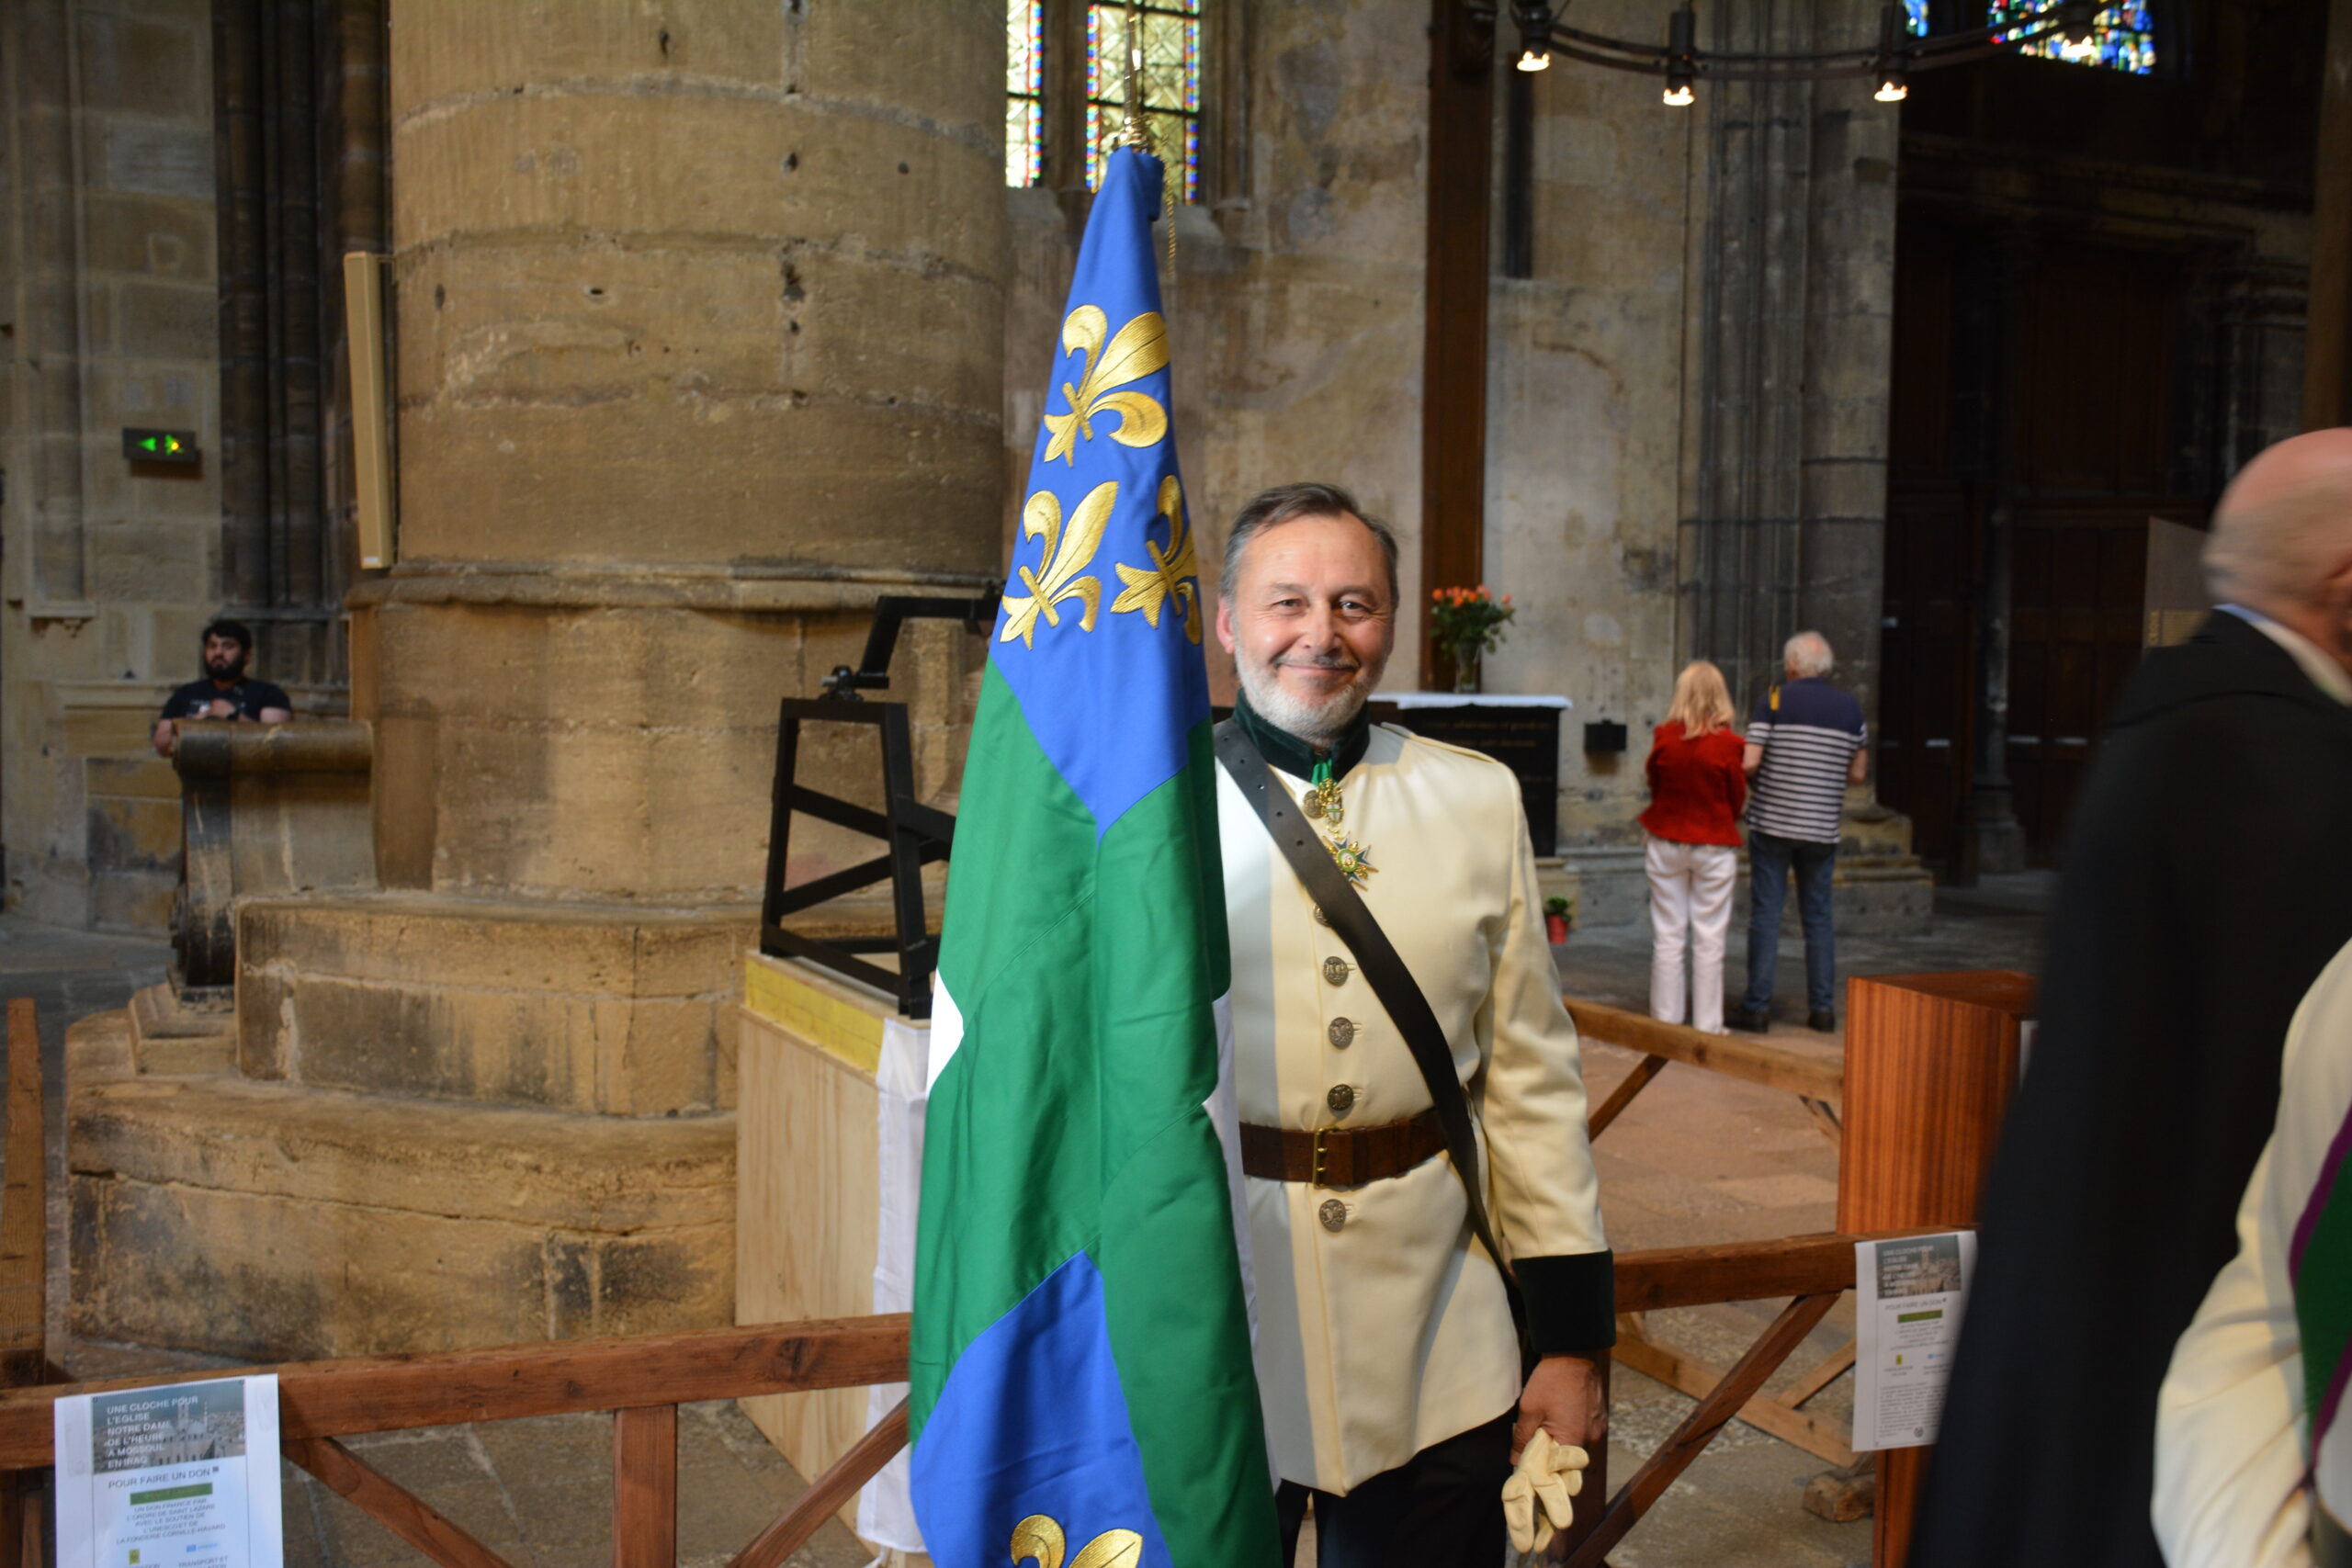 La cérémonie d’investitures des nouveaux membres de l’Ordre de saint Lazare de Jérusalem a eu lieu dans la cathédrale Saint Étienne de Metz